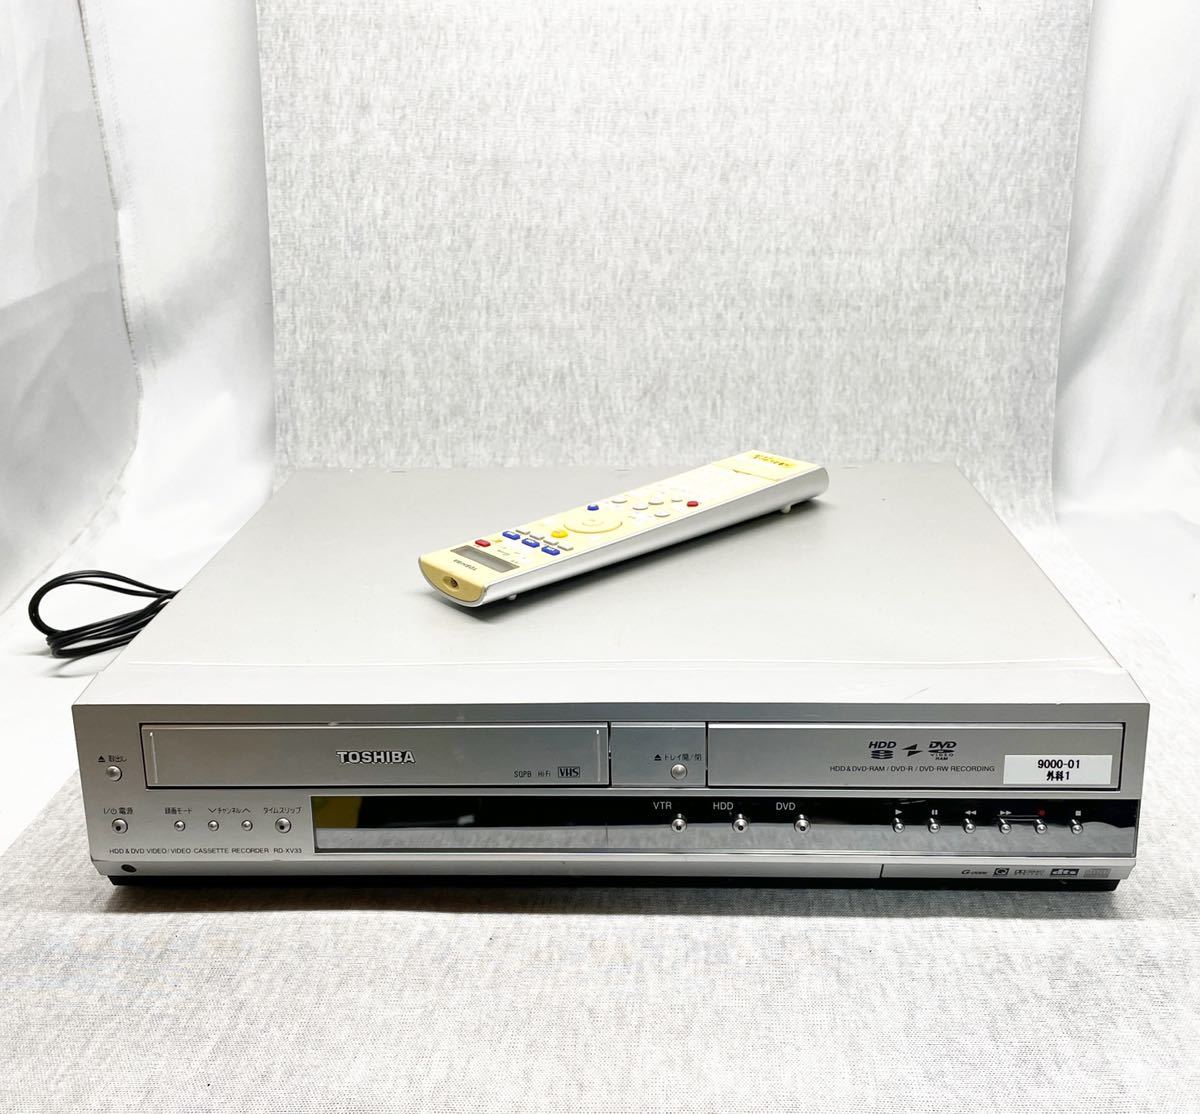 東芝 RD-XV33 VTR一体型HDD&DVDレコーダー 正規 sandorobotics.com